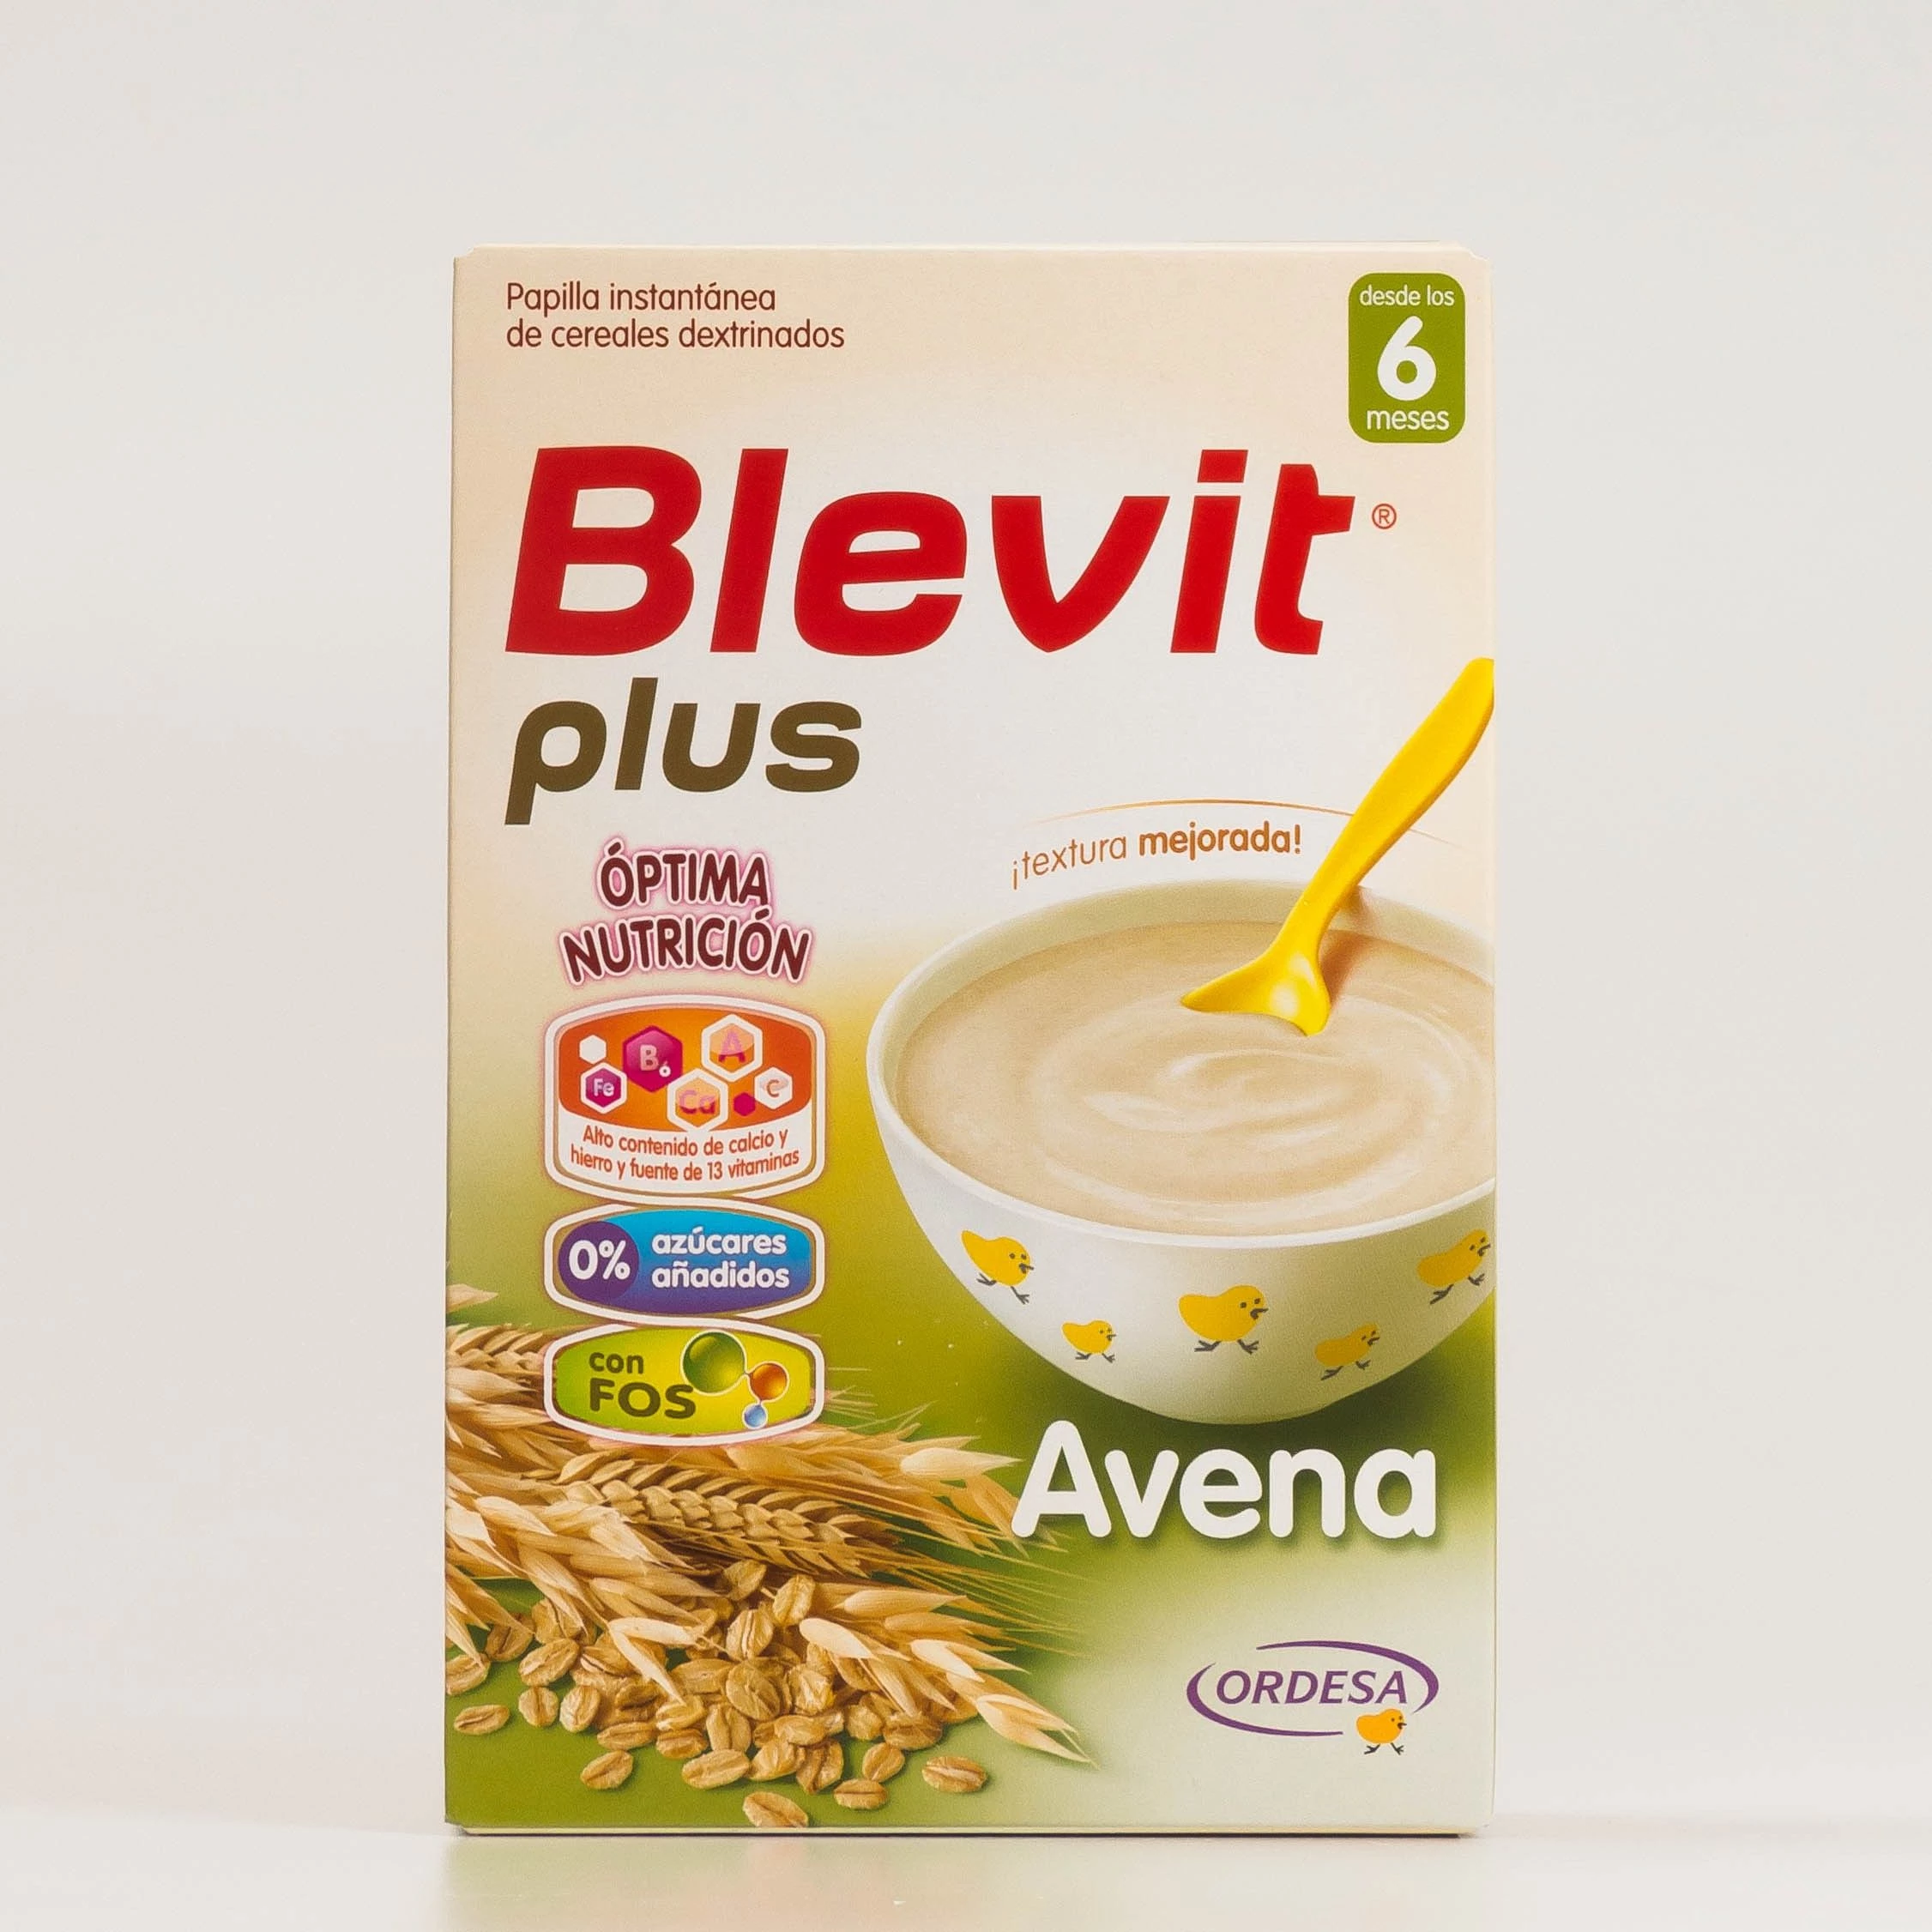 Blevit Plus Avena, 300g.